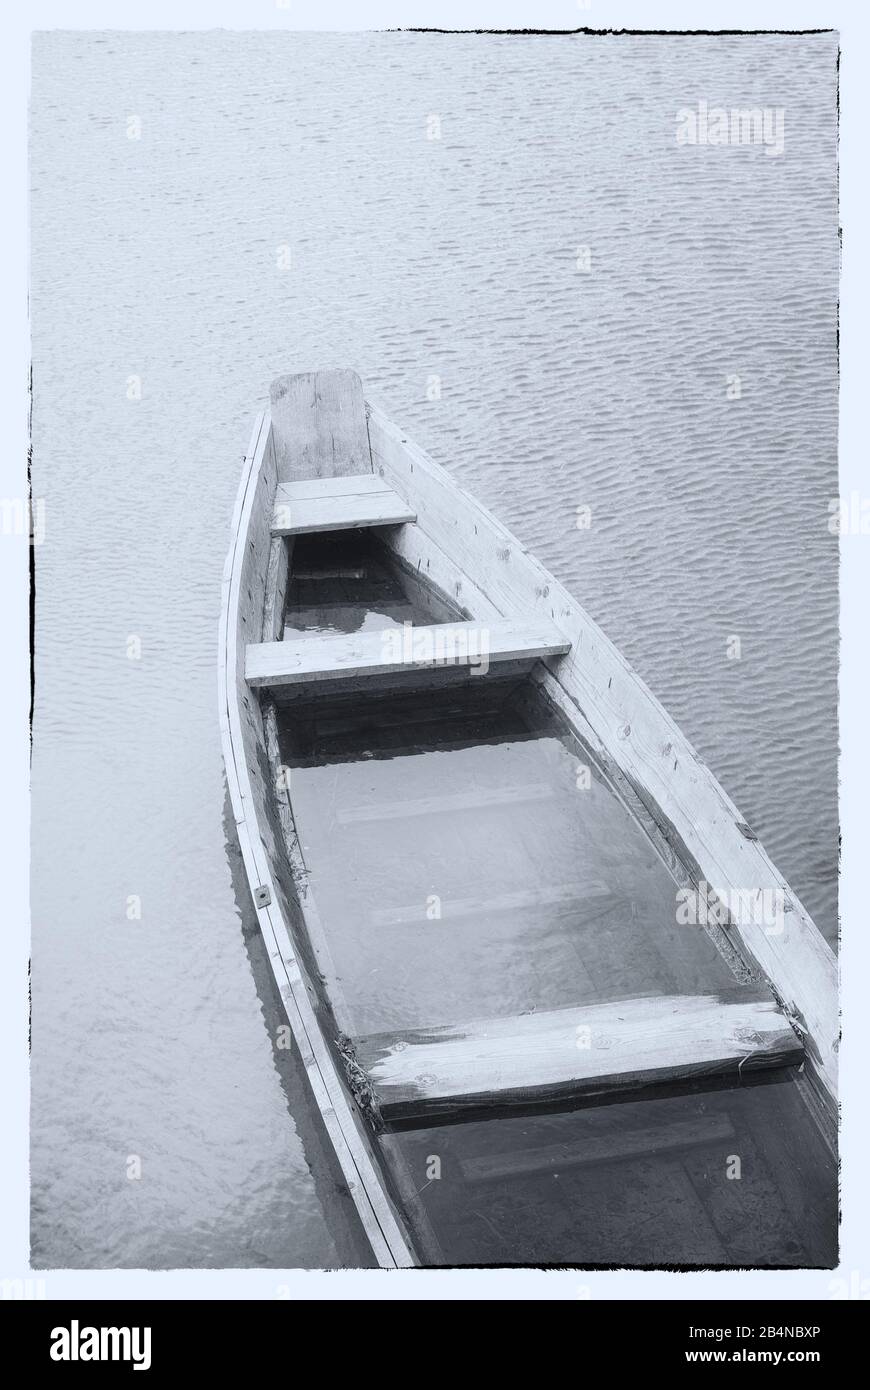 Kunstbild in Schwarzweiß. Ein Holzboot an einem nebligen See. Stockfoto